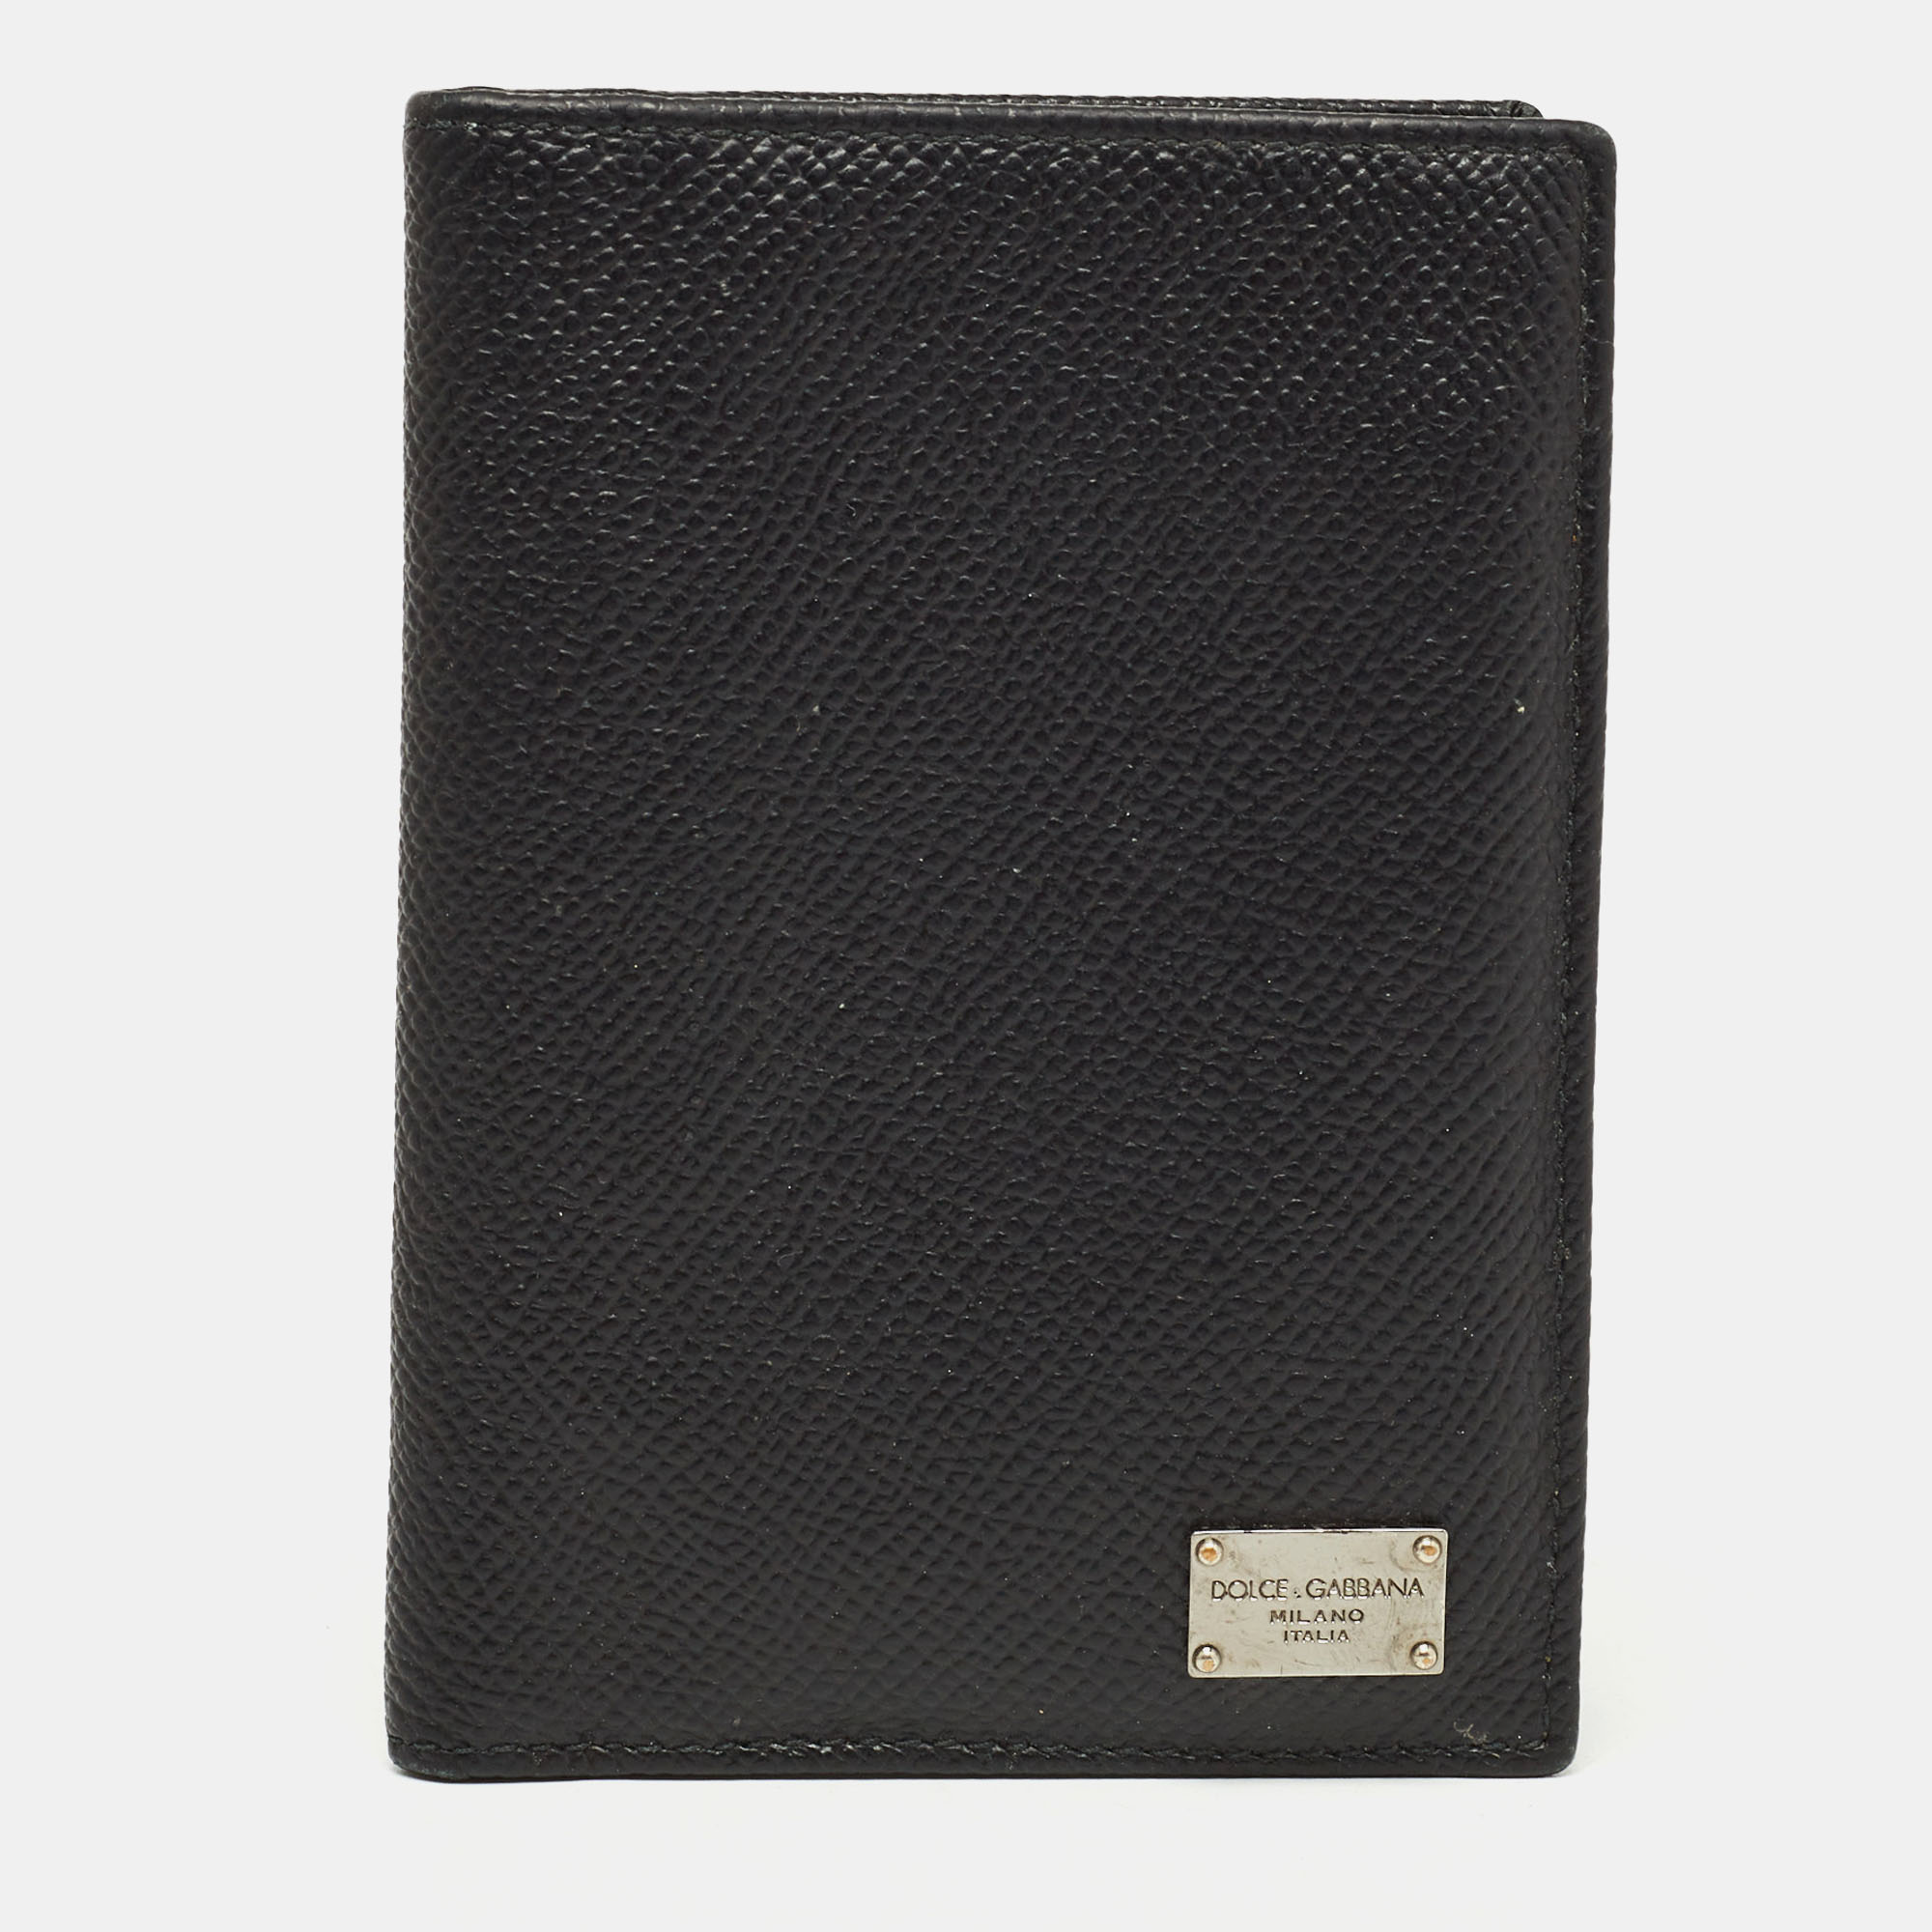 Dolce & gabbana dolce and gabbana black leather logo bifold card case